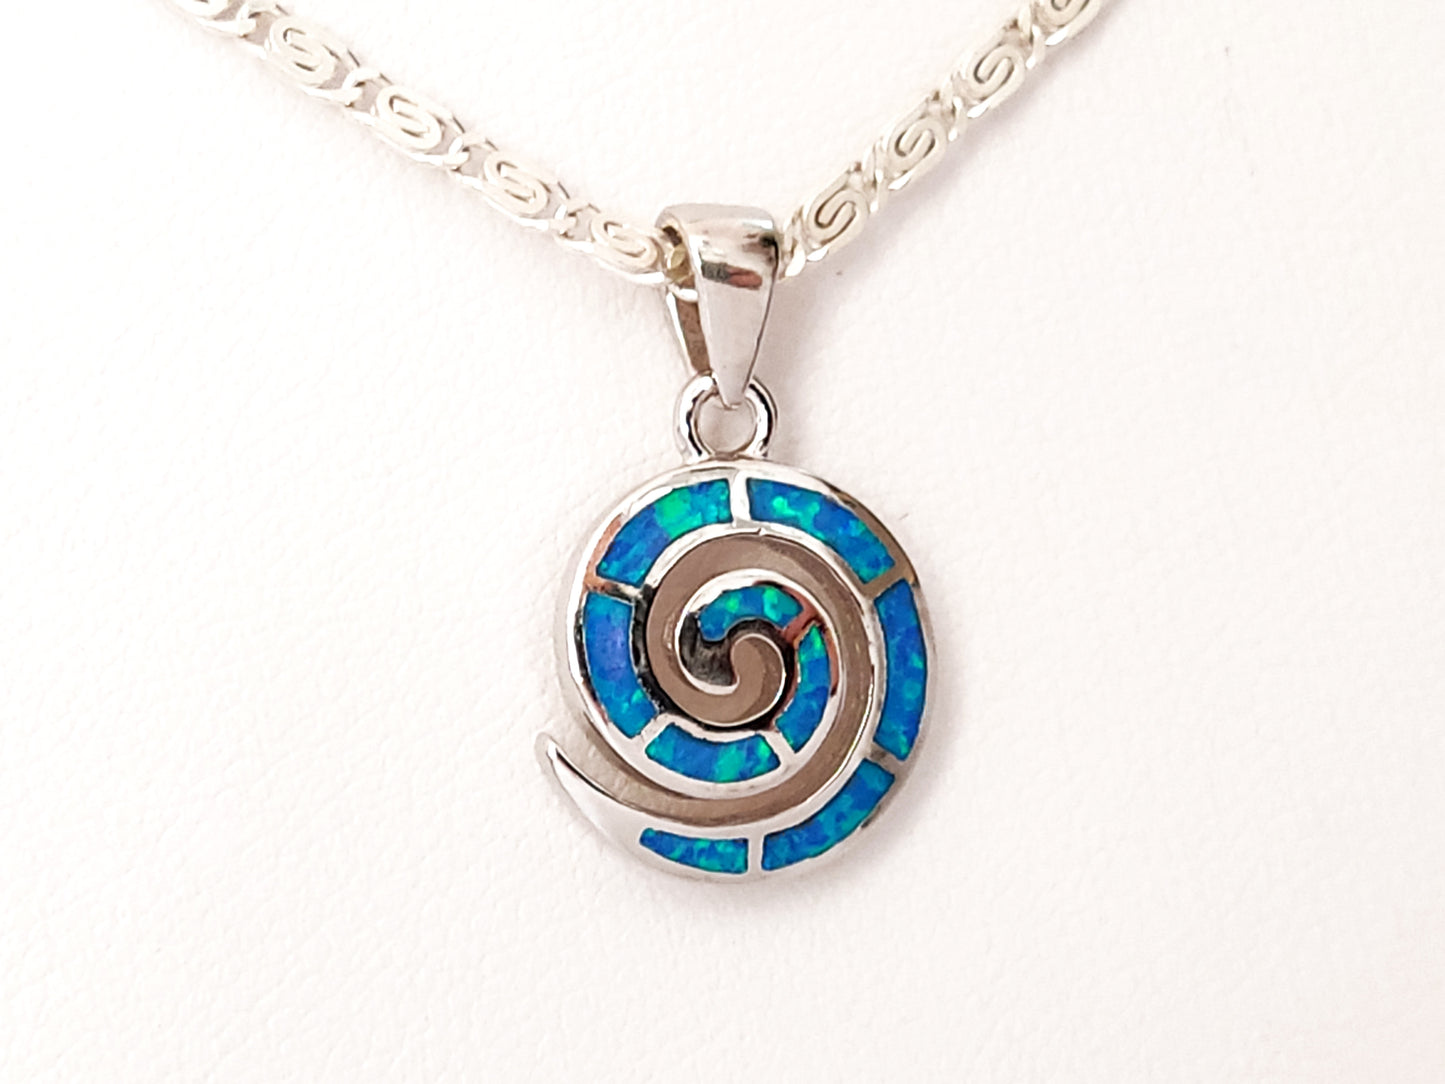 Collier avec pendentif en argent et chaîne d'opale bleue en spirale grecque, 15mm 